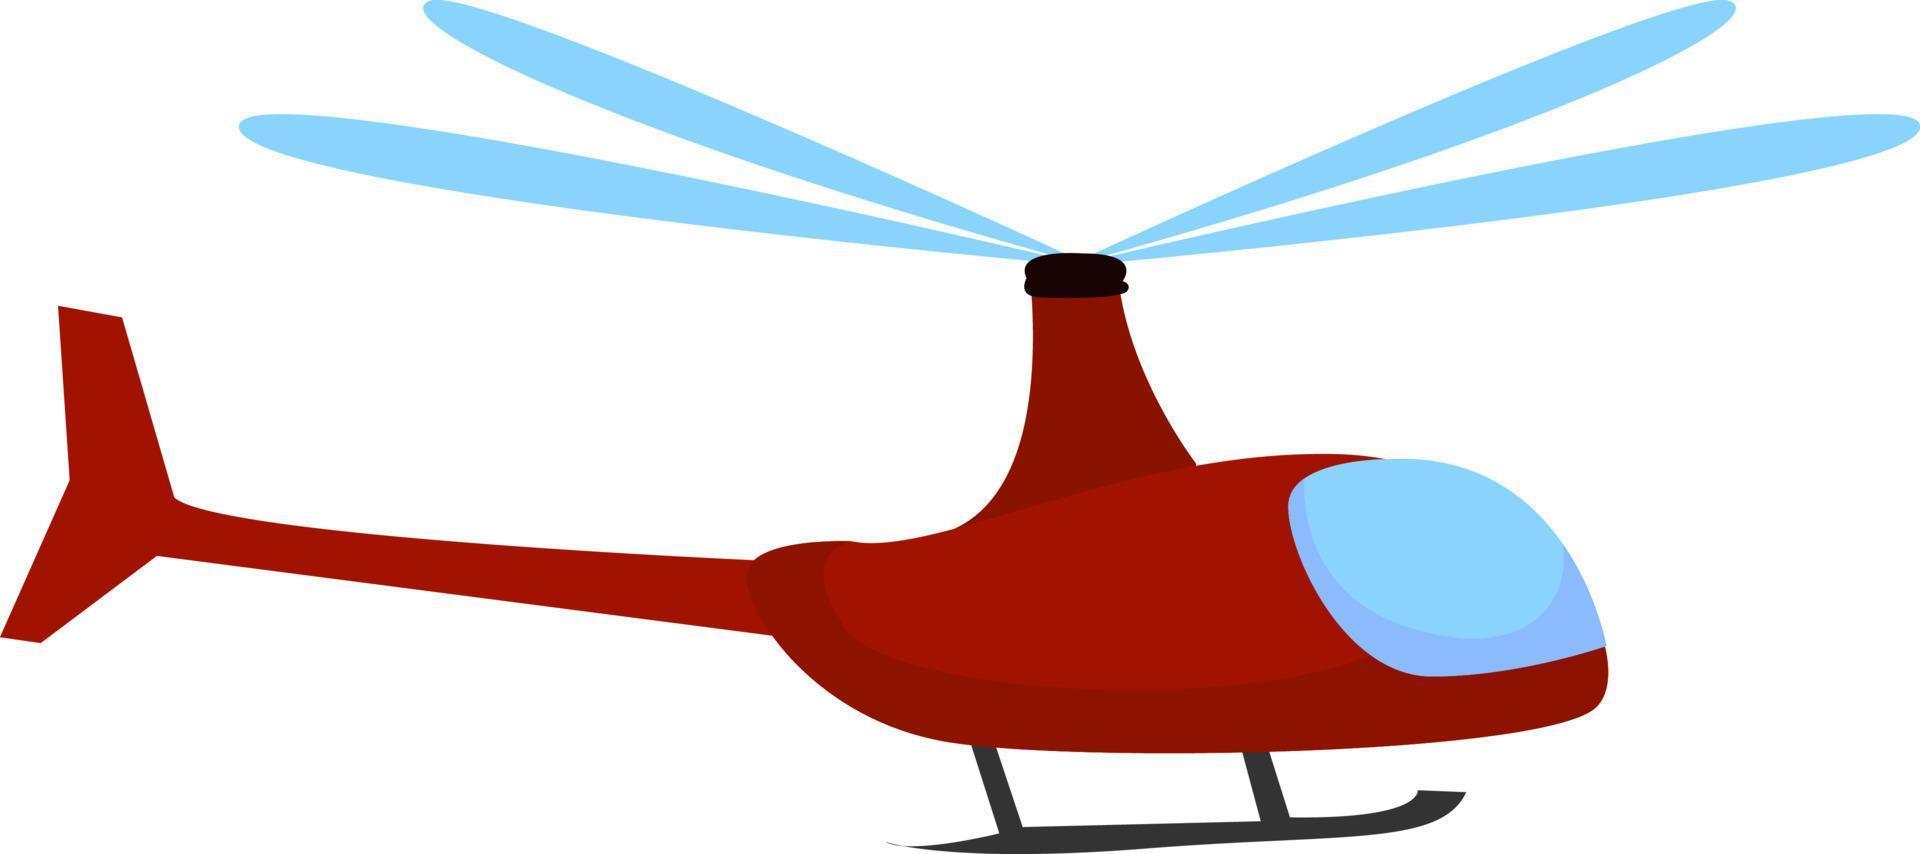 Hélicoptère rouge, illustration, vecteur sur fond blanc.